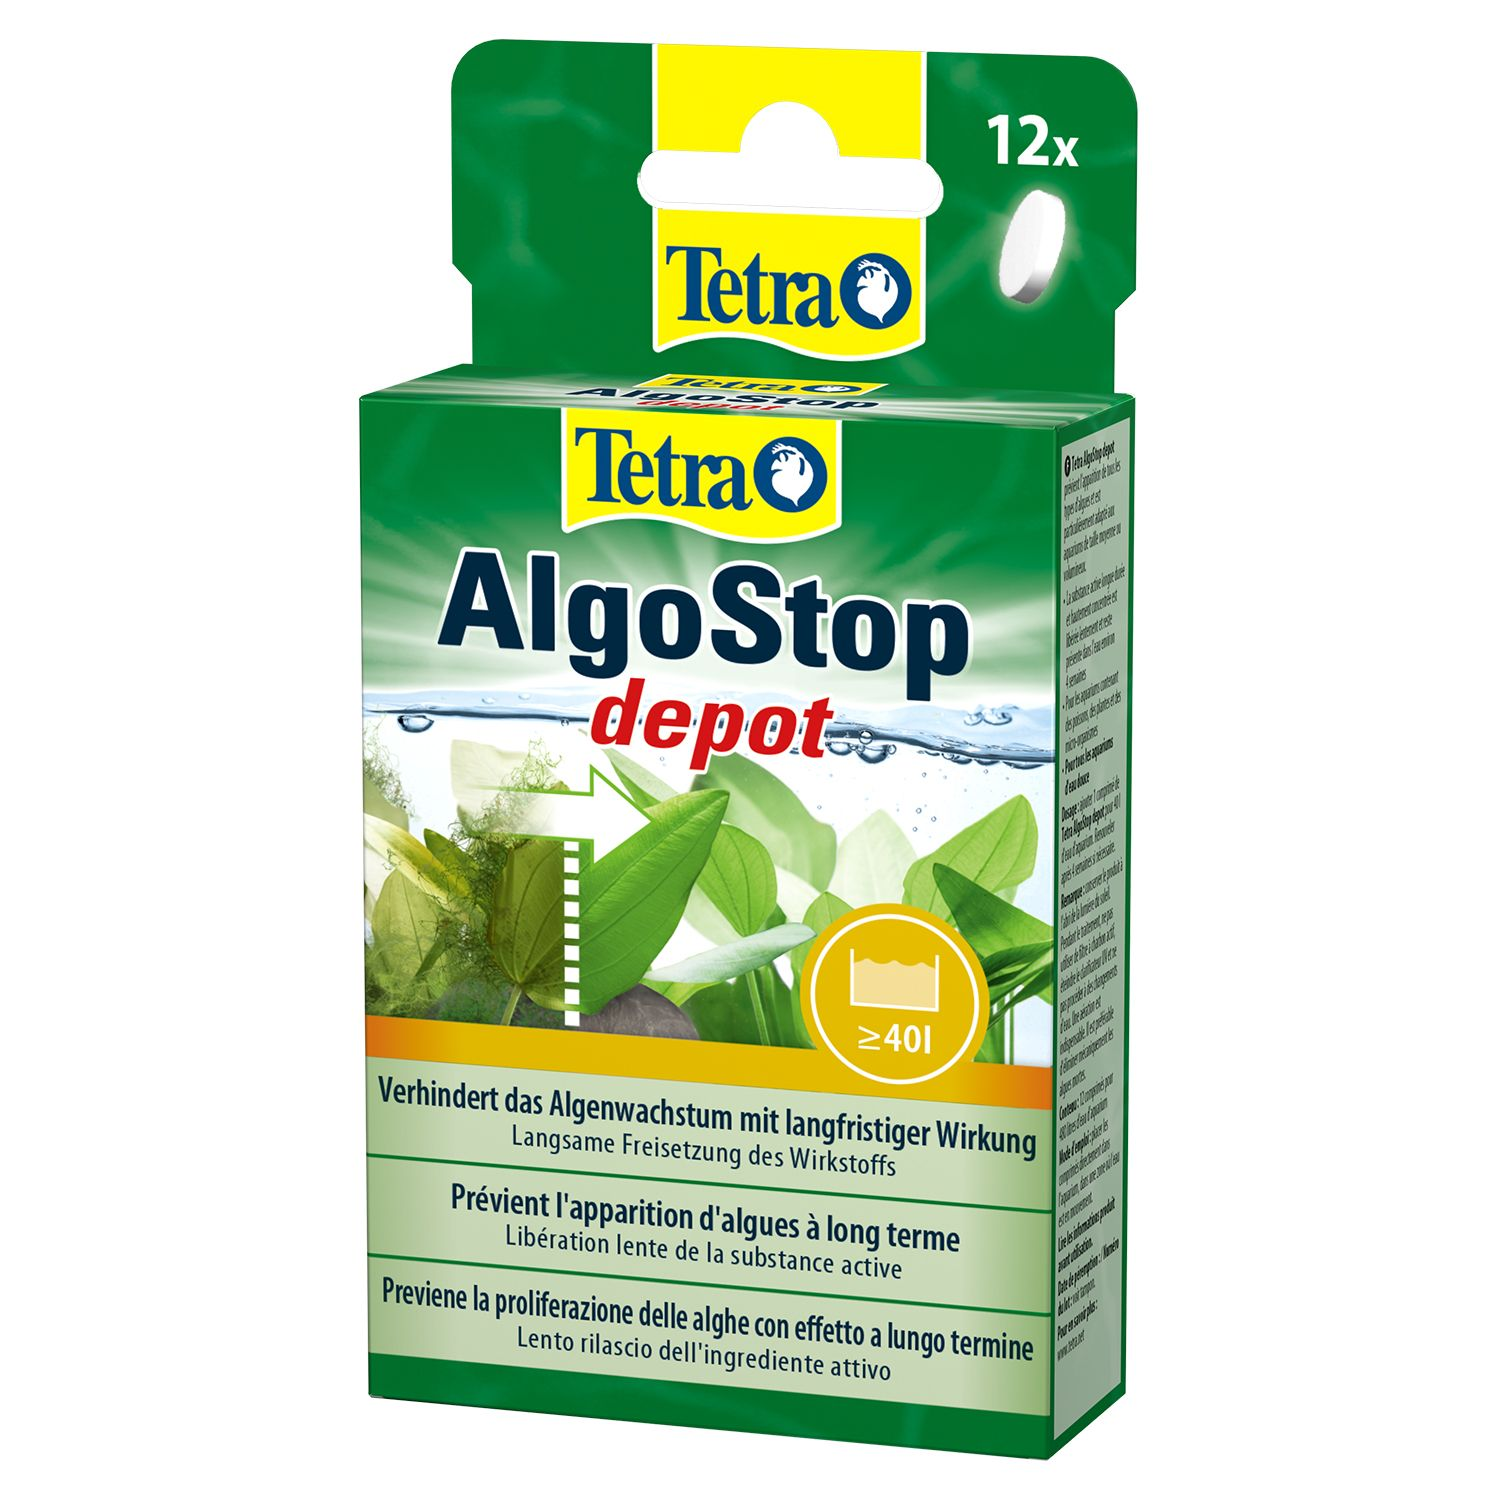 Средство для борьбы с водорослями Tetra AlgoStop Depot длительного действия, 12 таблеток